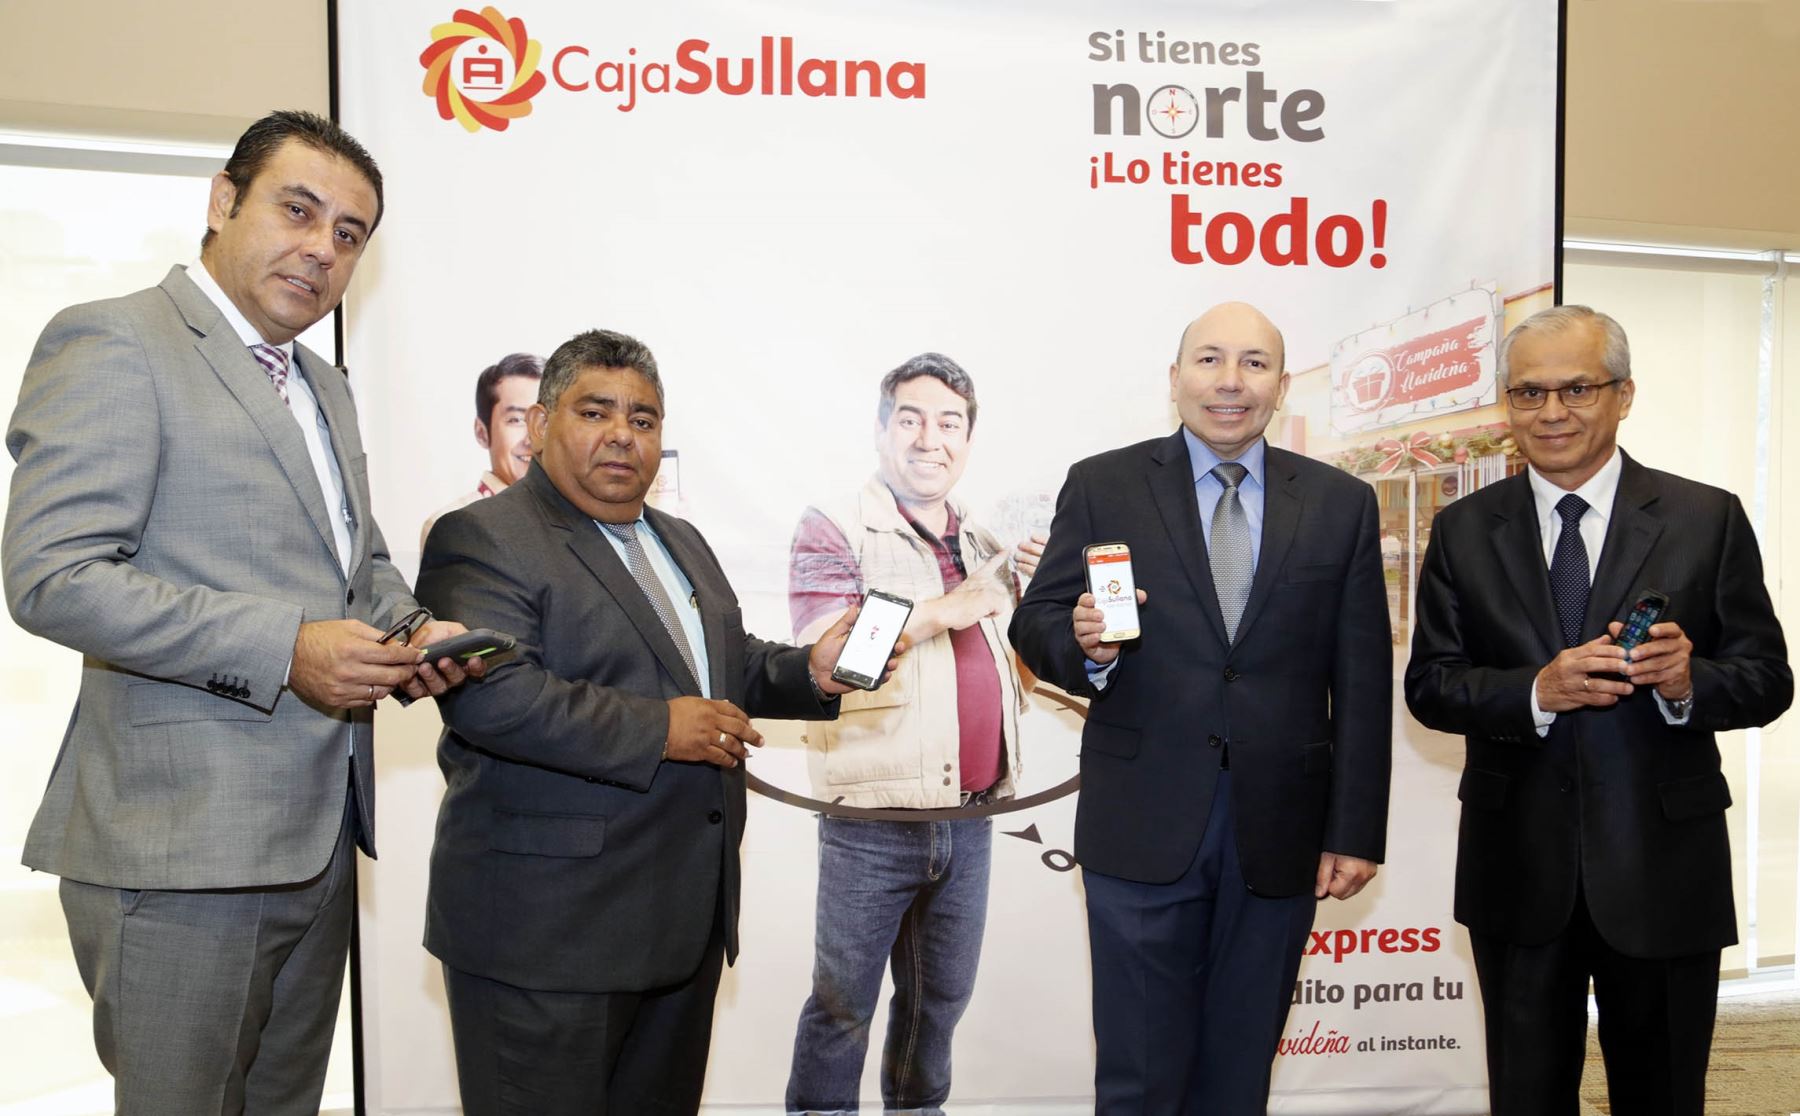 Directivos de Caja Sullana presentaron aplicativo móvil para otorgar préstamos en 5 minutos a sus clientes. Foto: Cortesía.